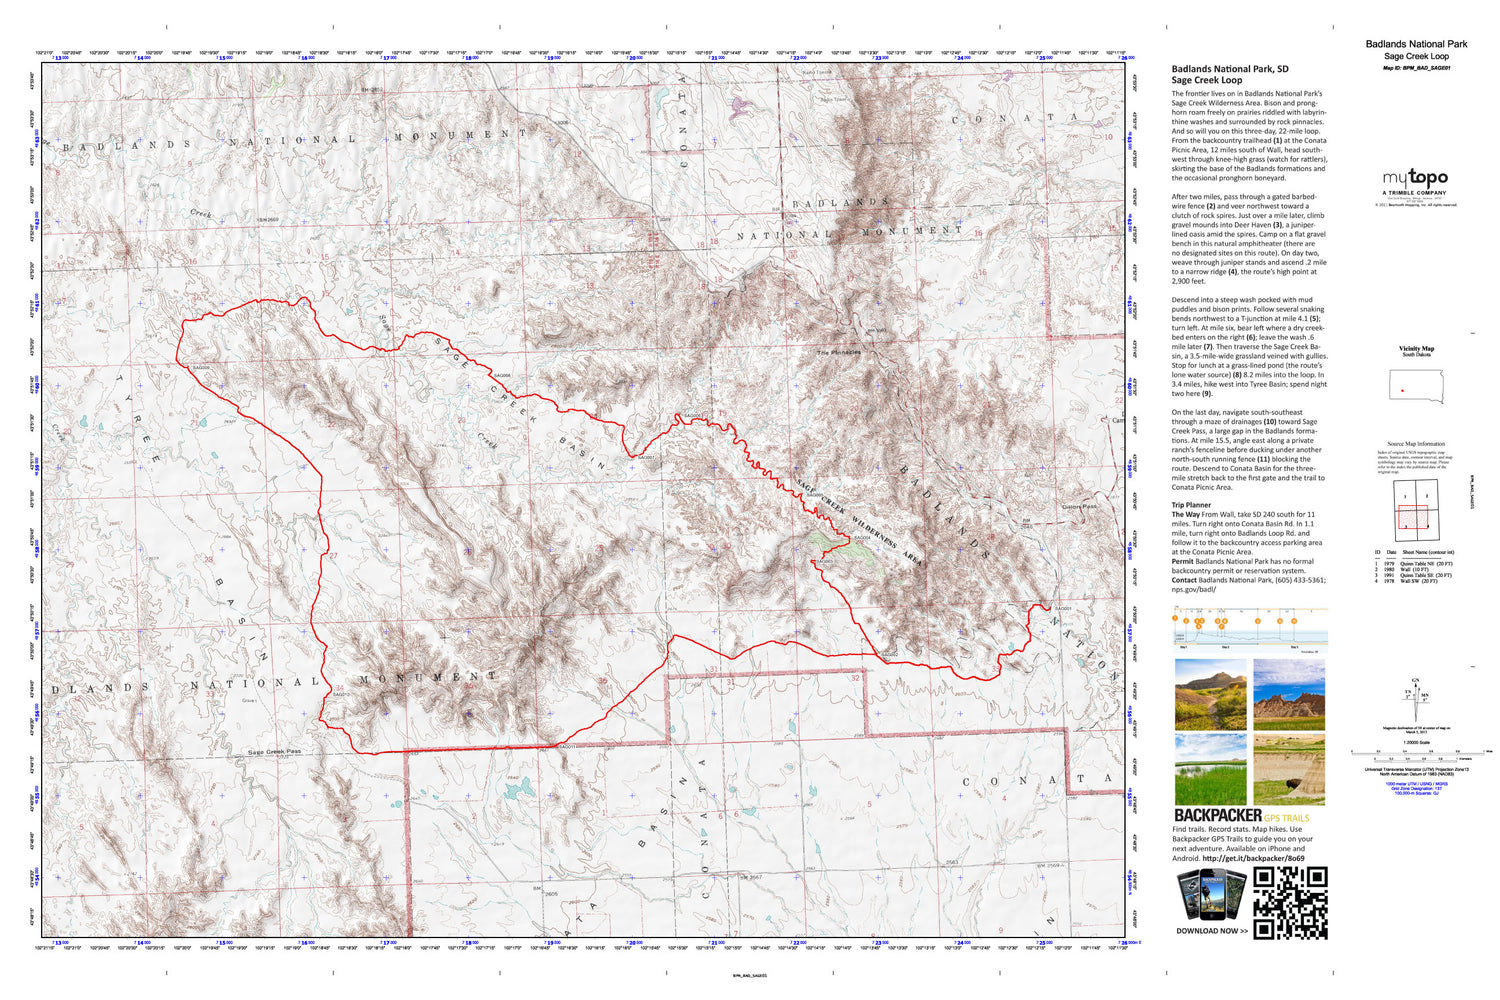 Sage Creek Loop Map (Badlands National Park, South Dakota) Image